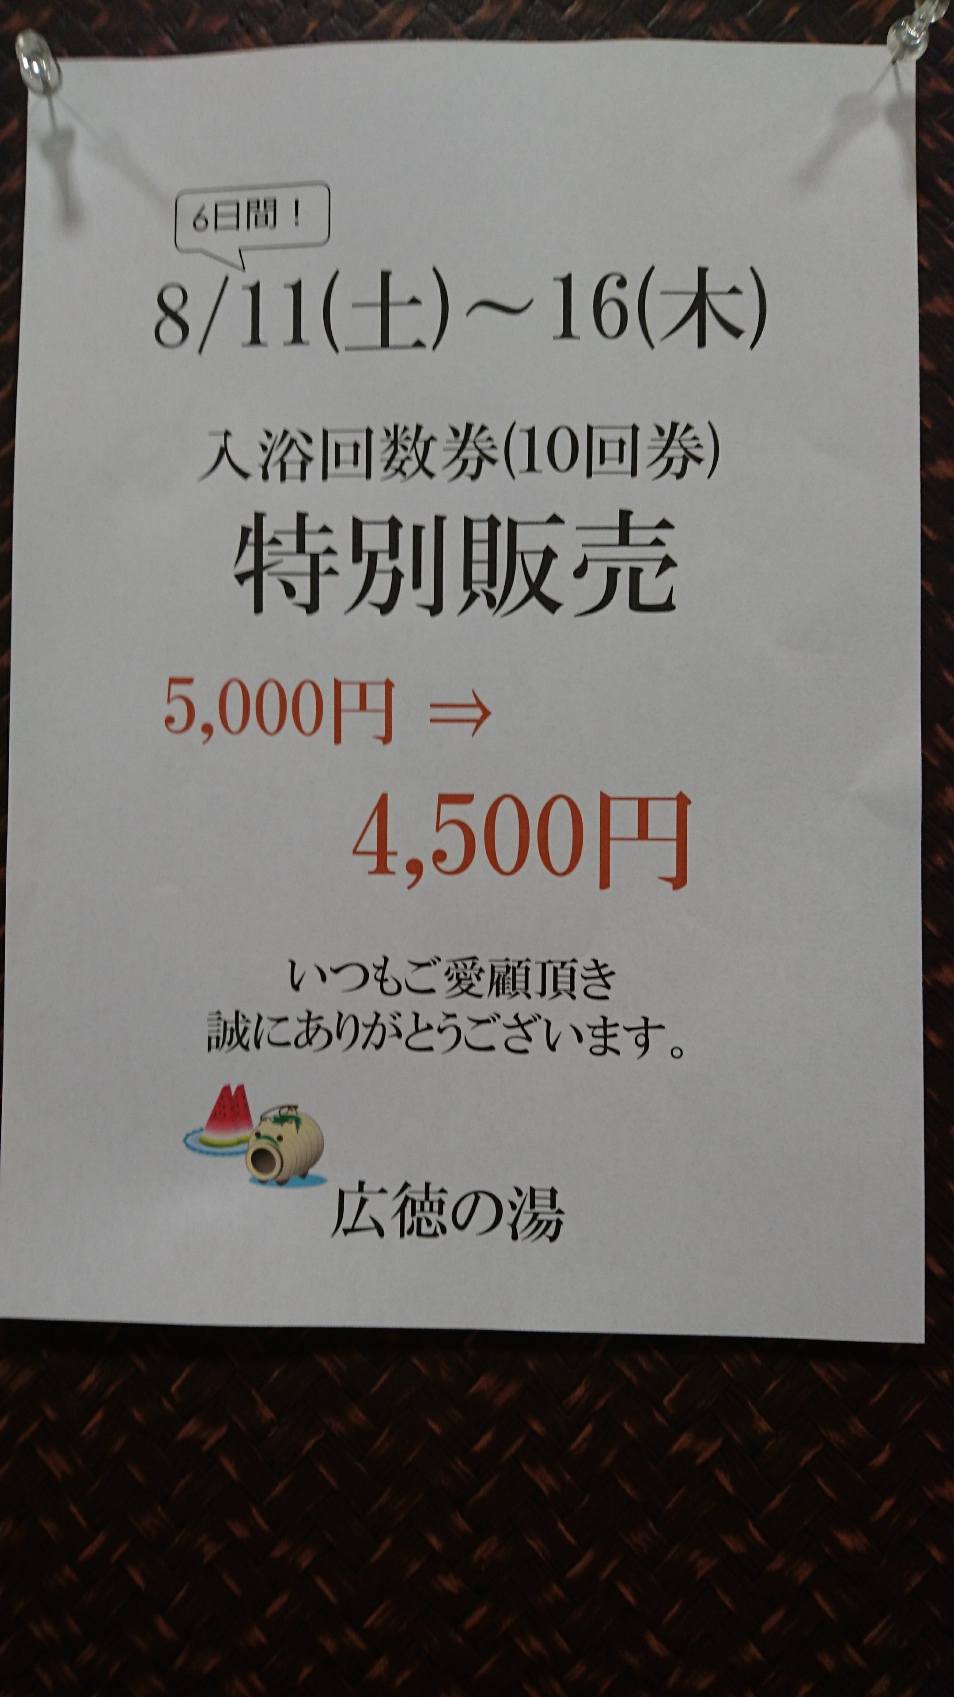 雨の露天風呂 スーパー銭湯広徳の湯 | 長野市広徳のスーパー銭湯「広徳の湯」